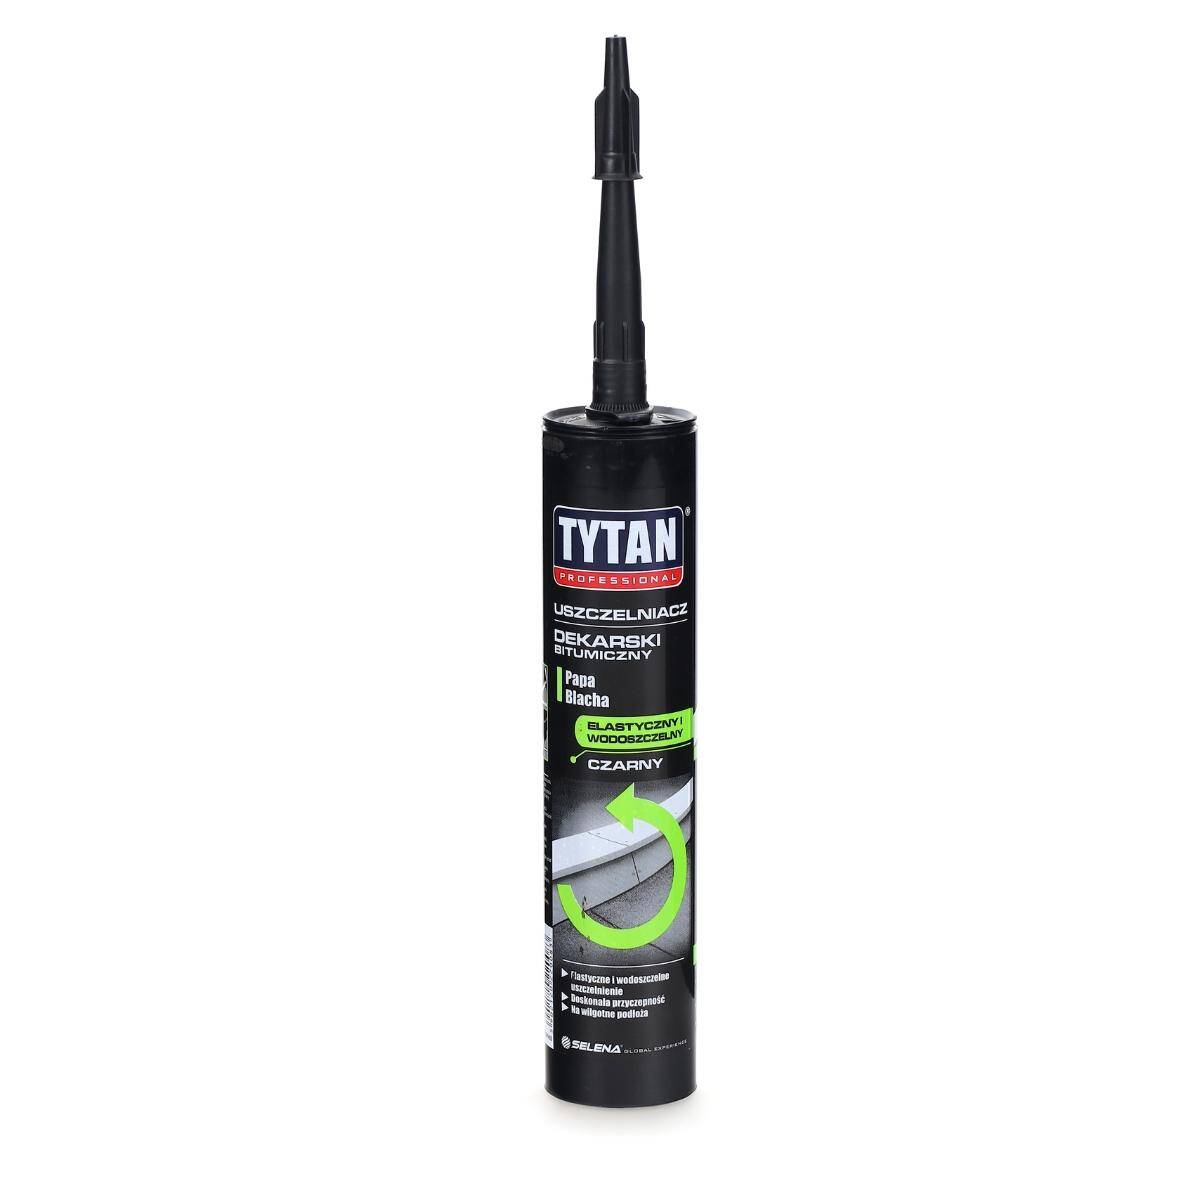  Uszczelniacz dekarski bitumiczny czarny 280 ml TYTAN Professional